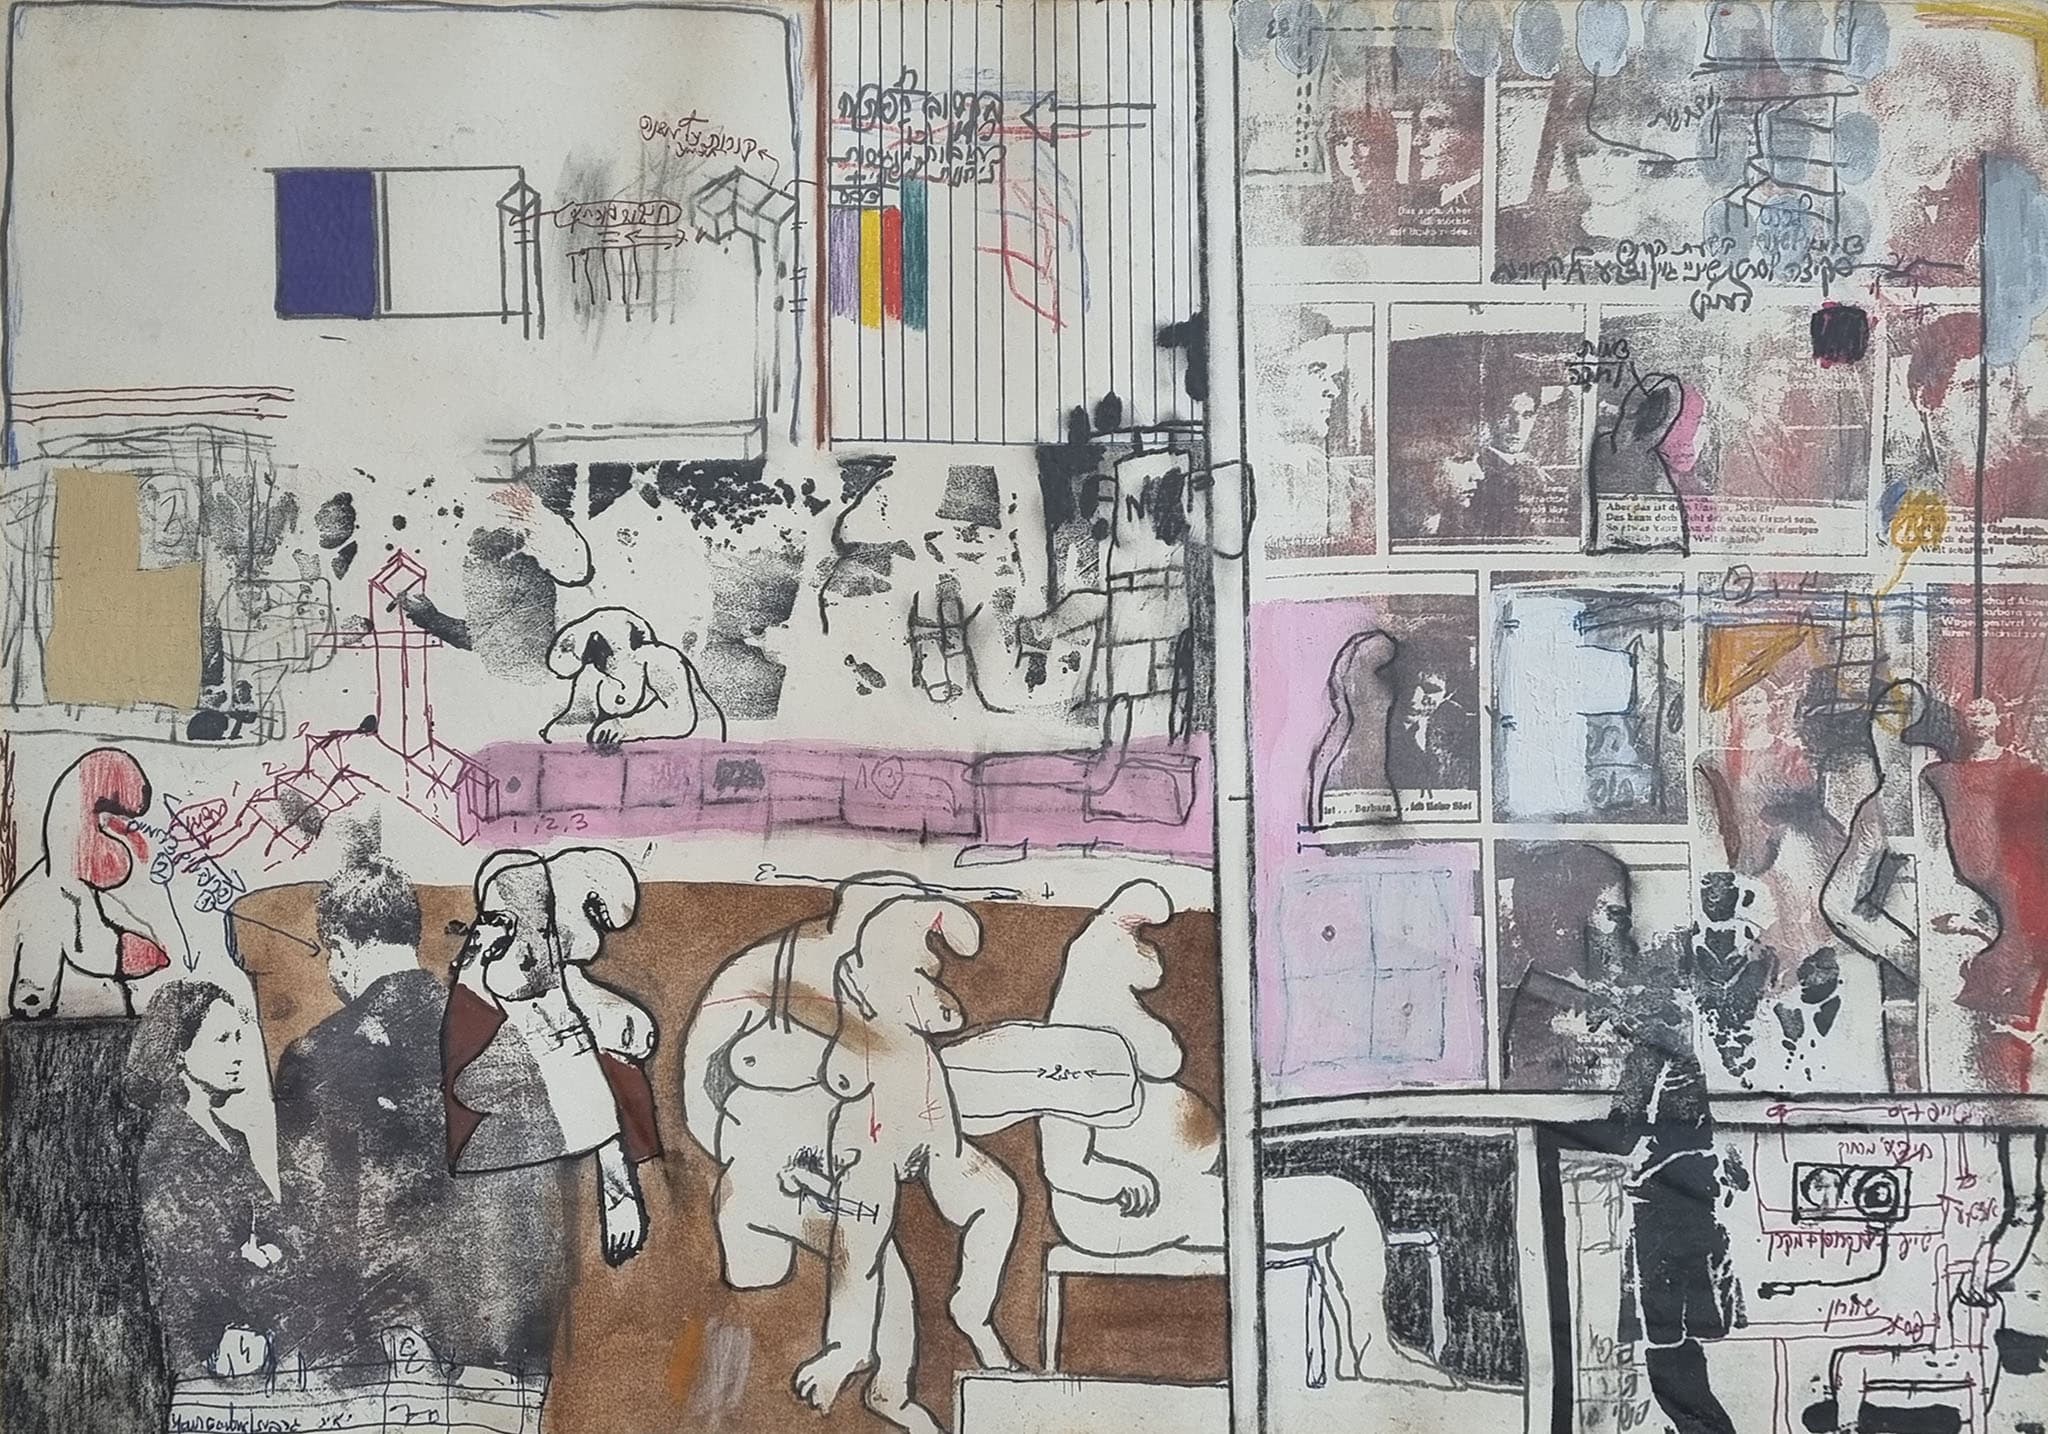 יאיר גרבוז, "ללא כותרת", 1970, טכניקה מעורבת על נייר, 50x35 ס"מ